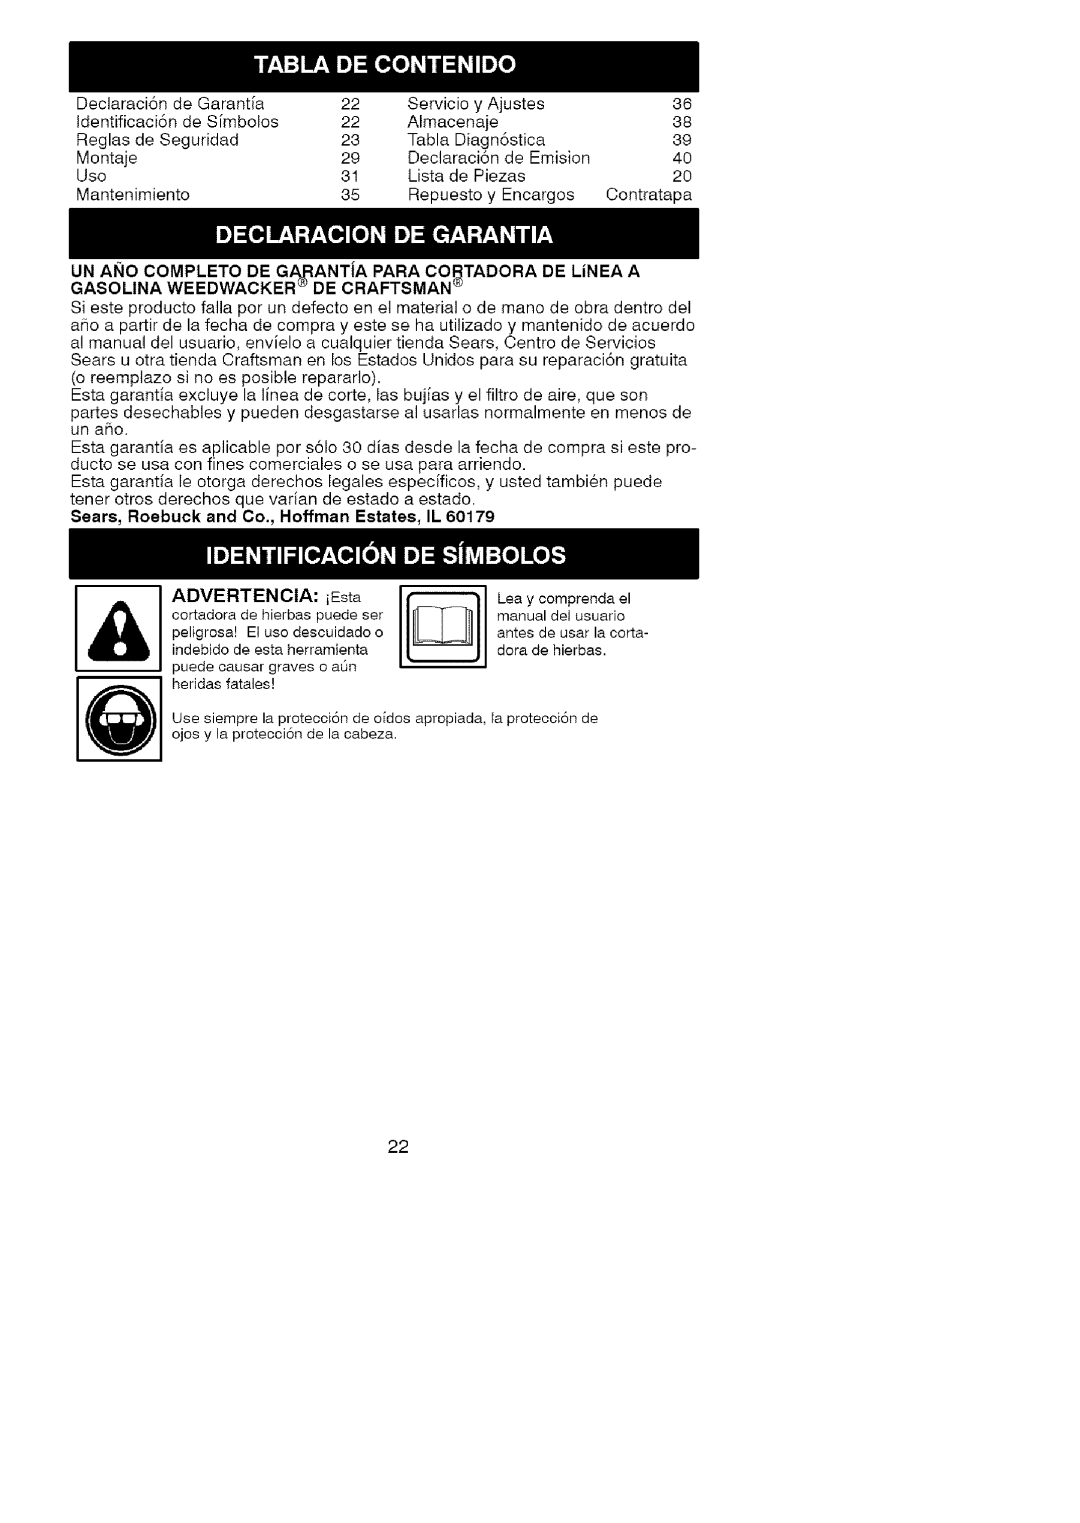 Craftsman 358.79107 manual ADVERTENCIA: iEsta D indebido de esta herramienta, Sears, Roebuck and Co., Hoffman Estates, IL 